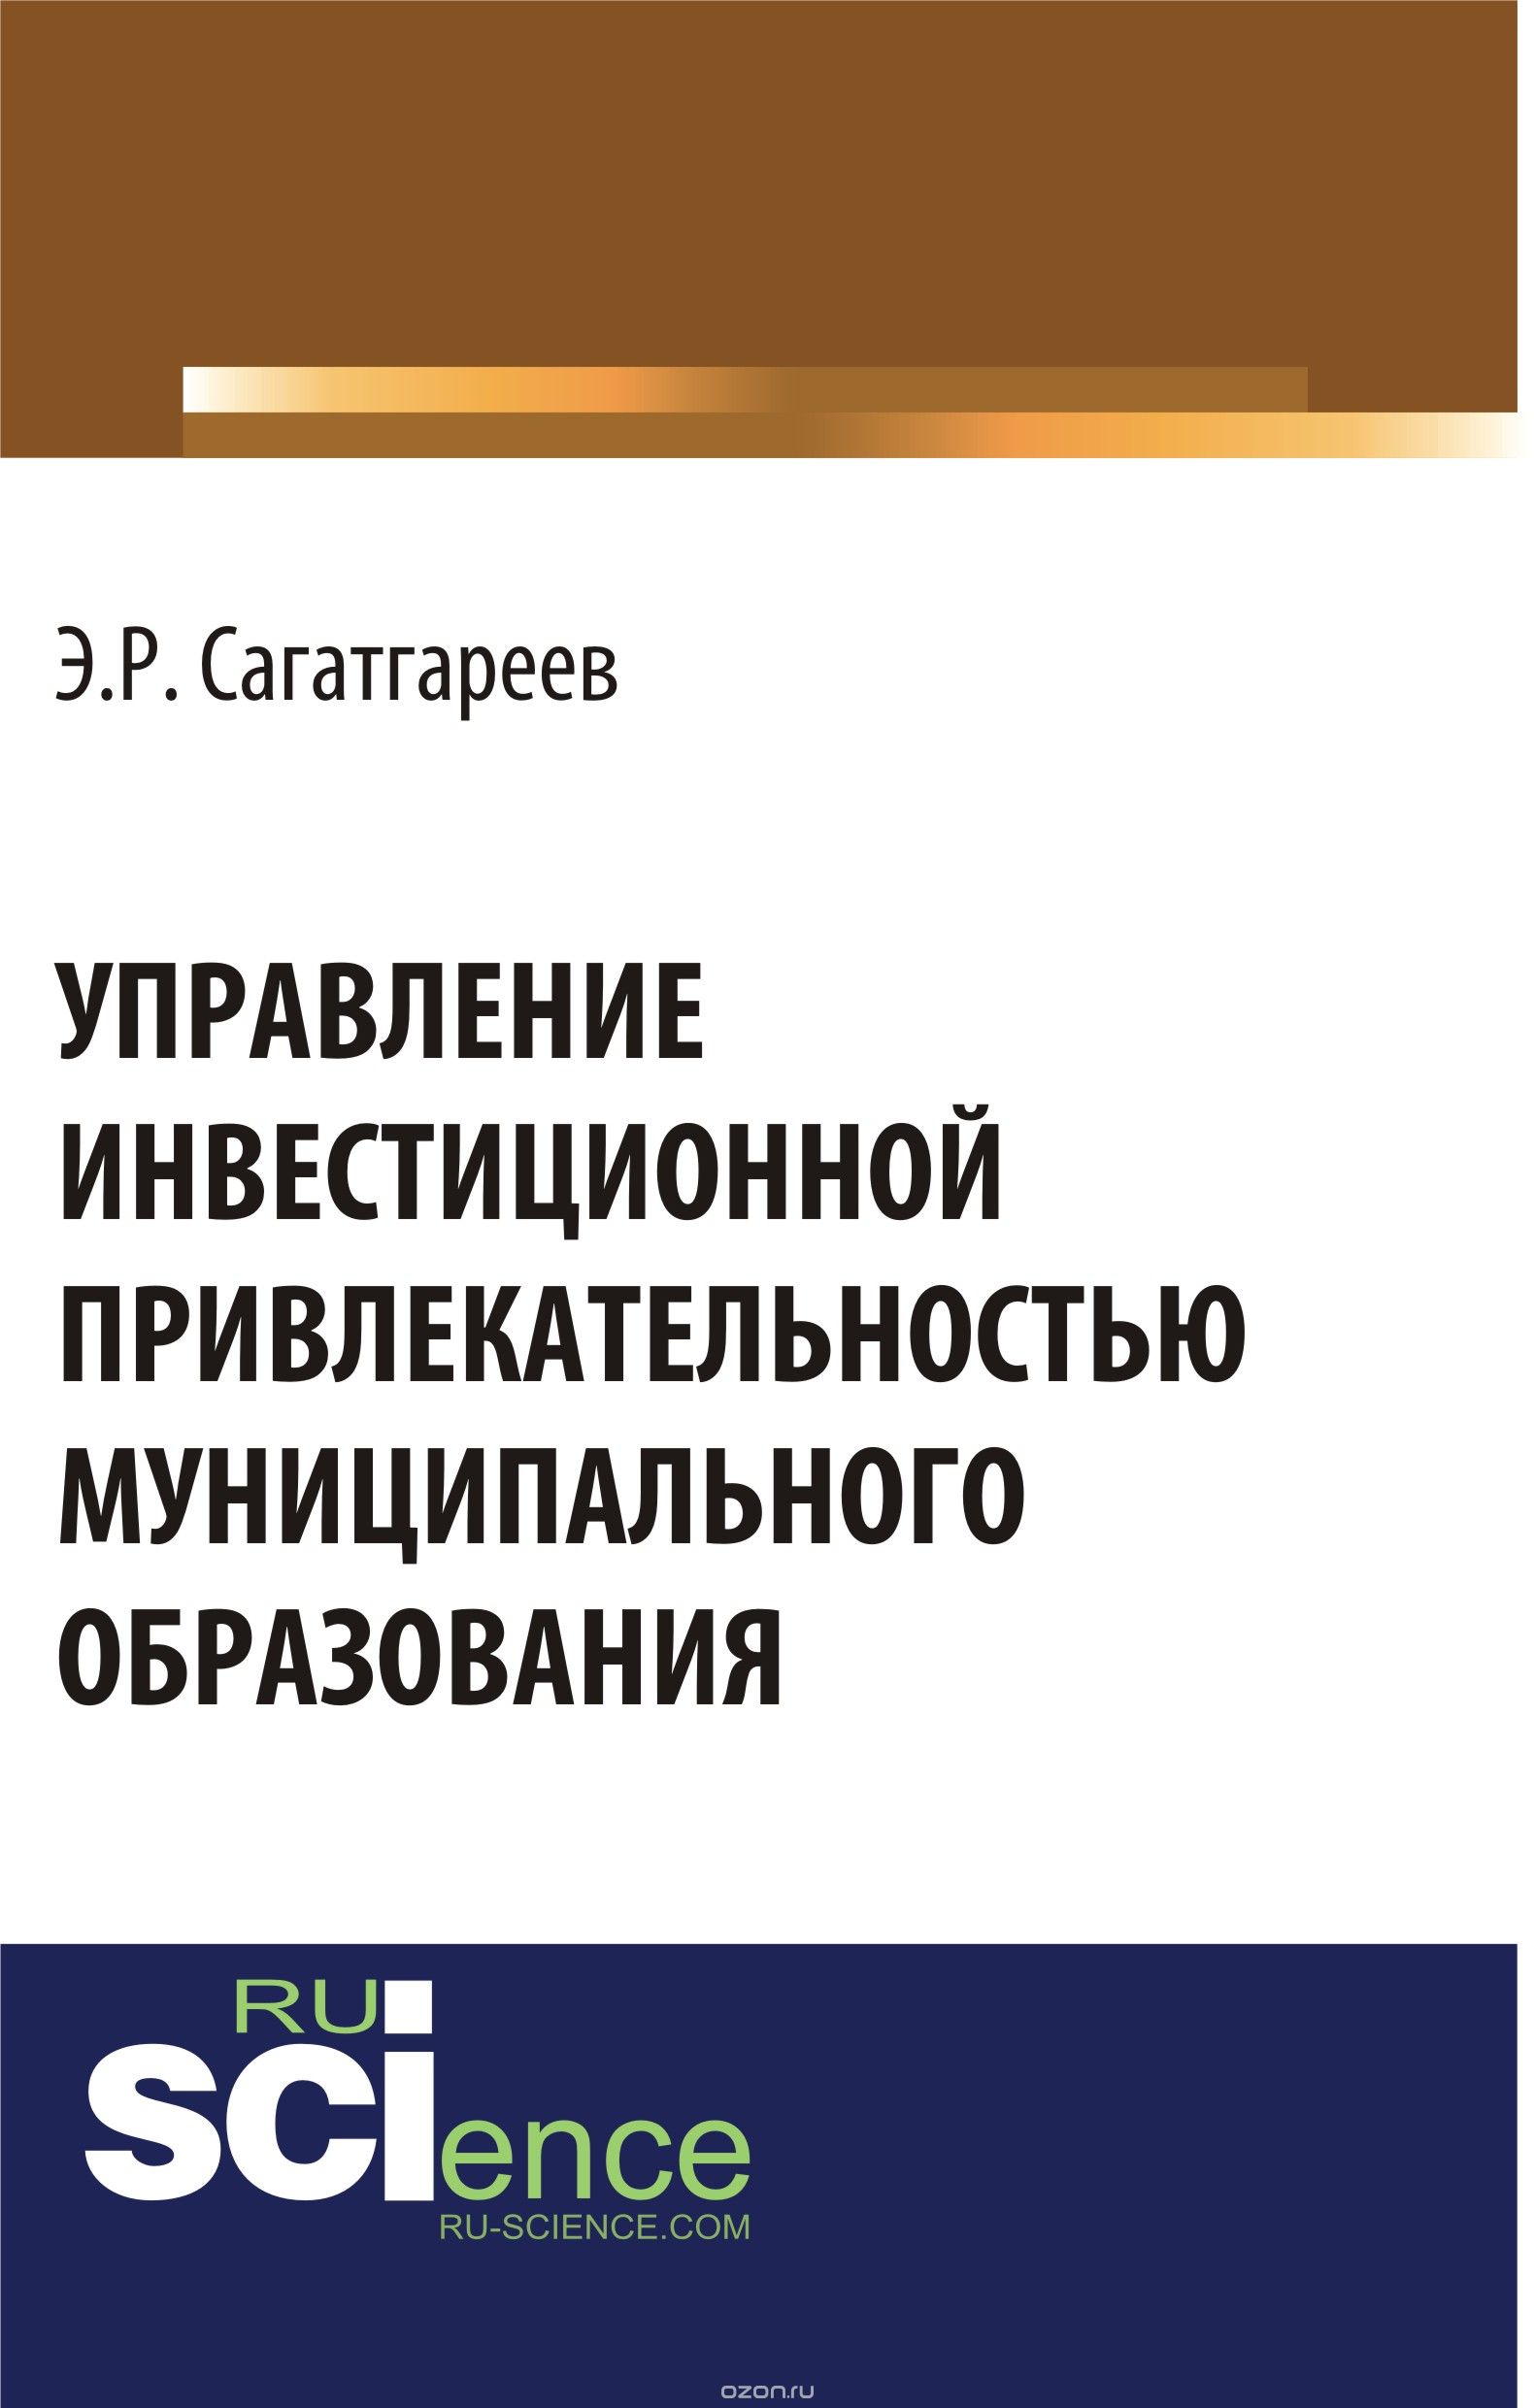 Скачать книгу "Управление инвестиционной привлекательностью муниципального образования, Э. Р. Сагатгареев"